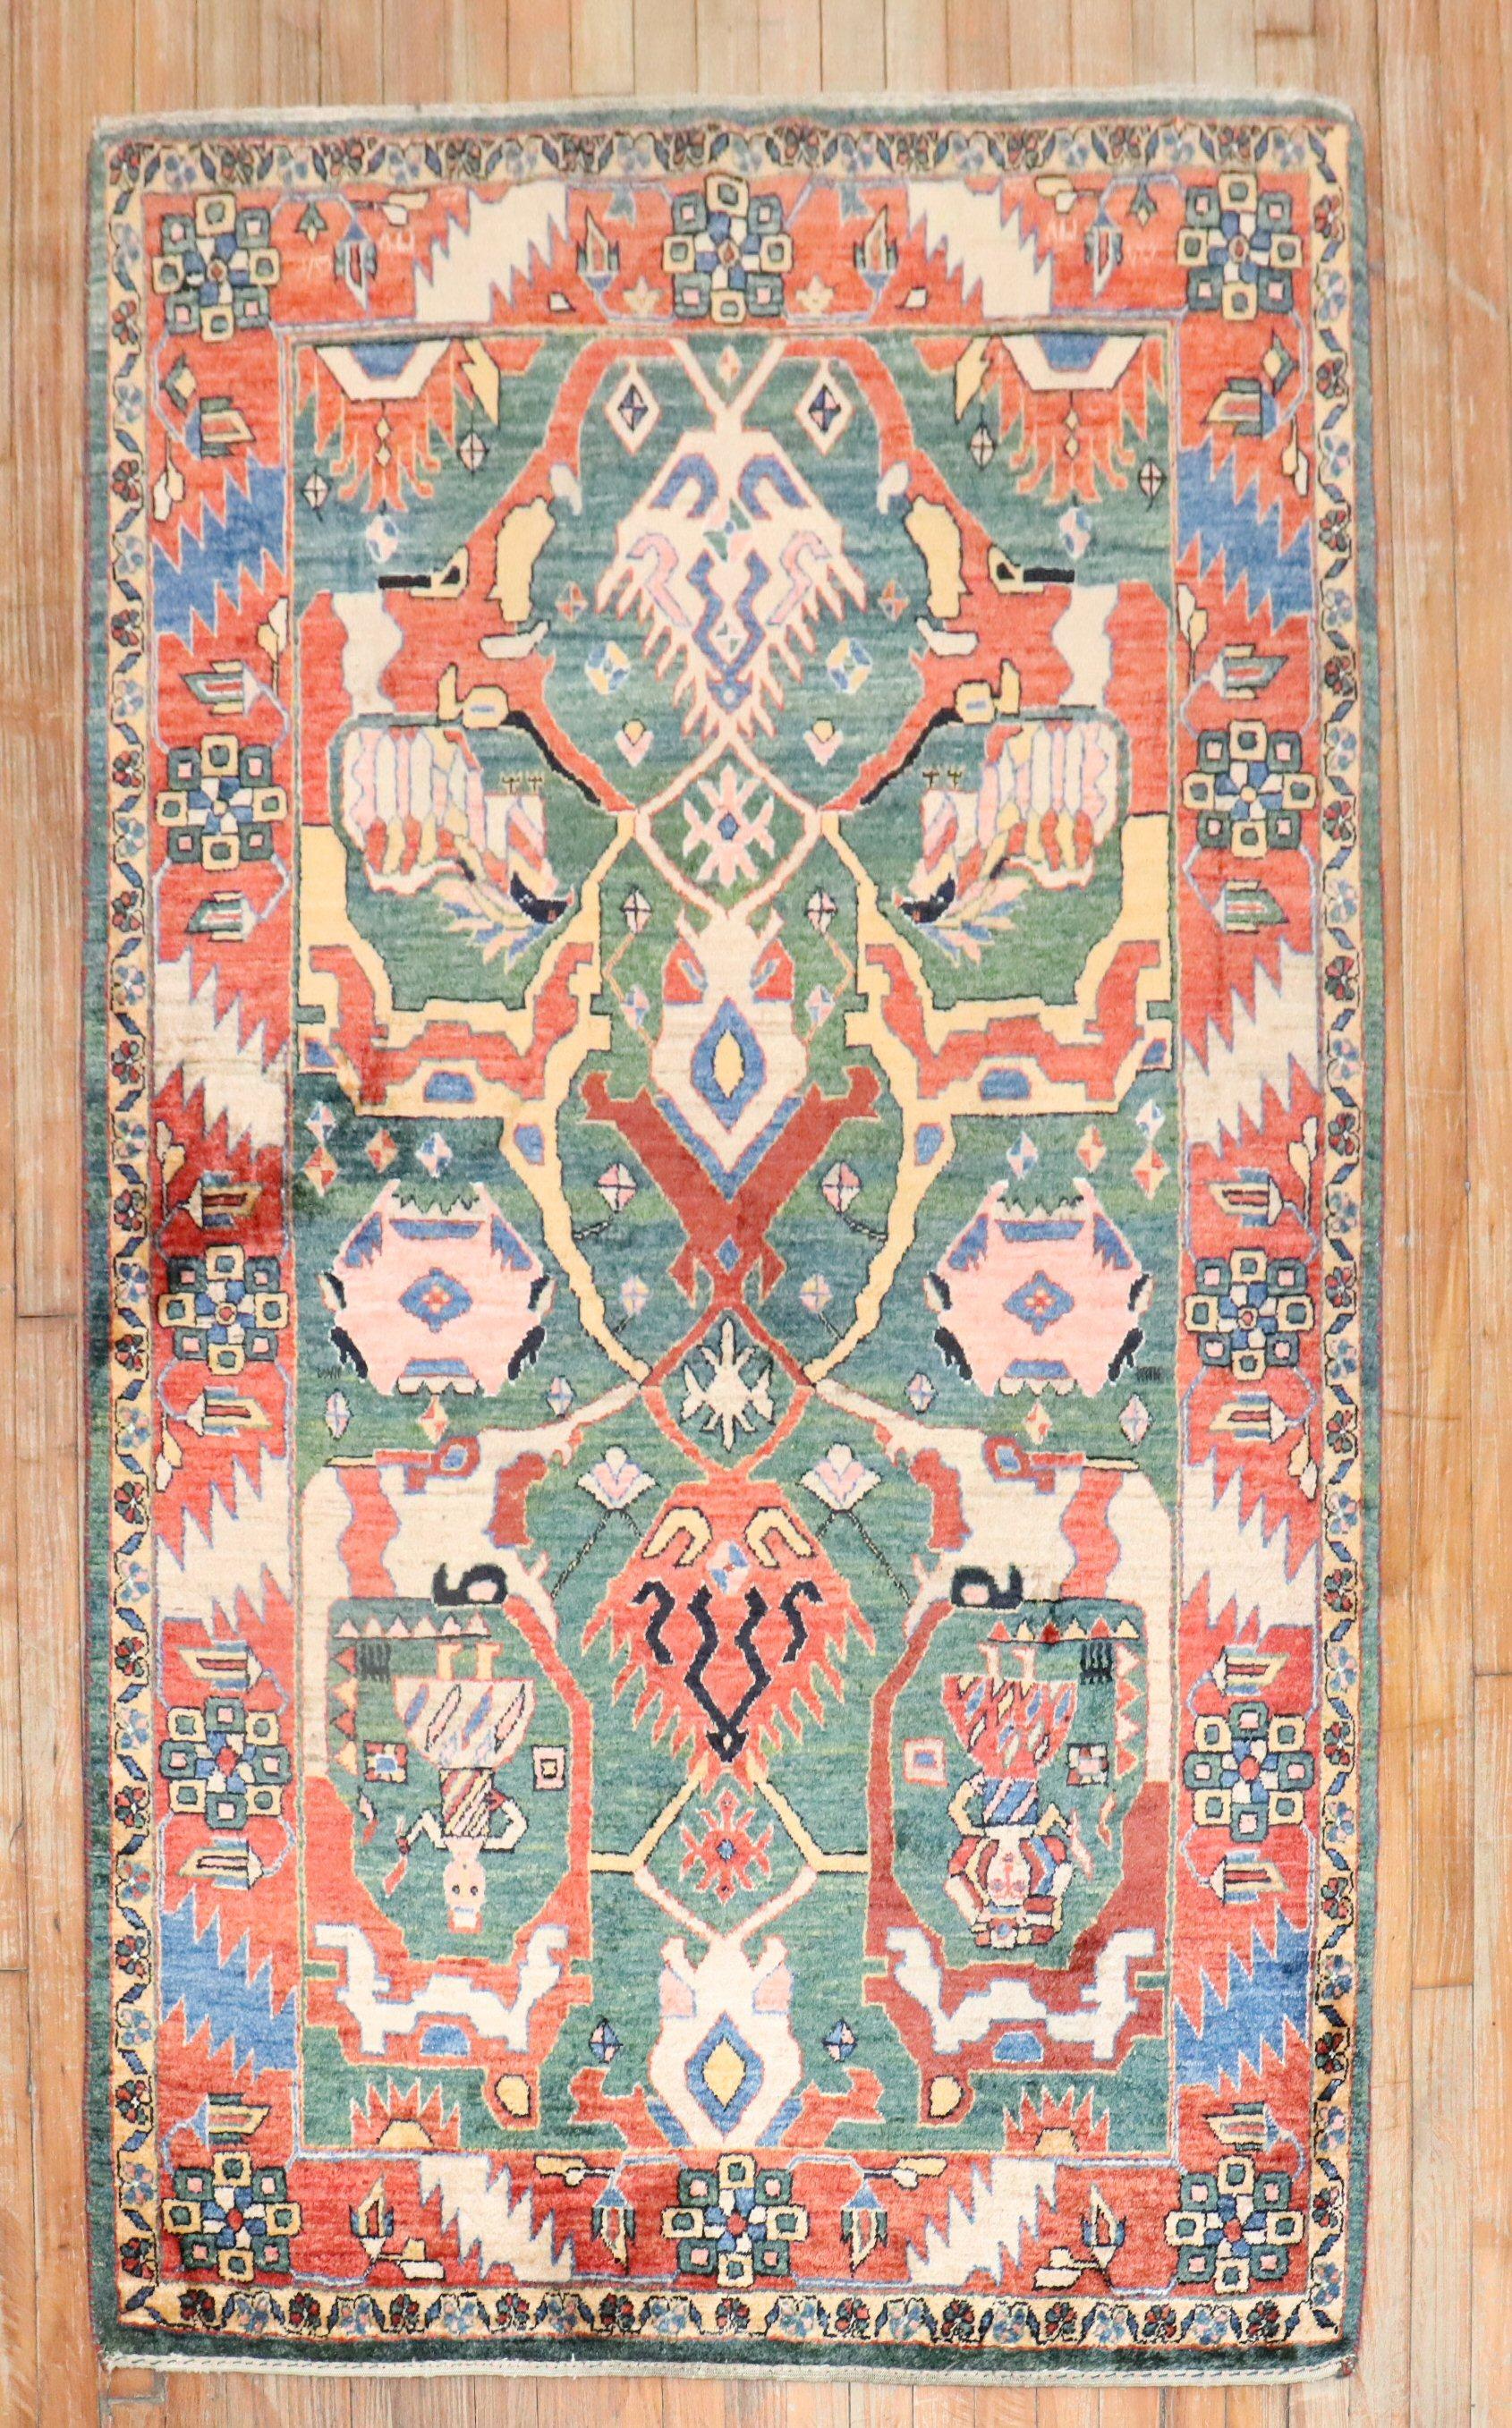 Ein persischer Gabbeh-Teppich aus dem frühen 21. Jahrhundert mit einem großflächigen Allover-Muster auf einem grünen Feld

Größe 3'11